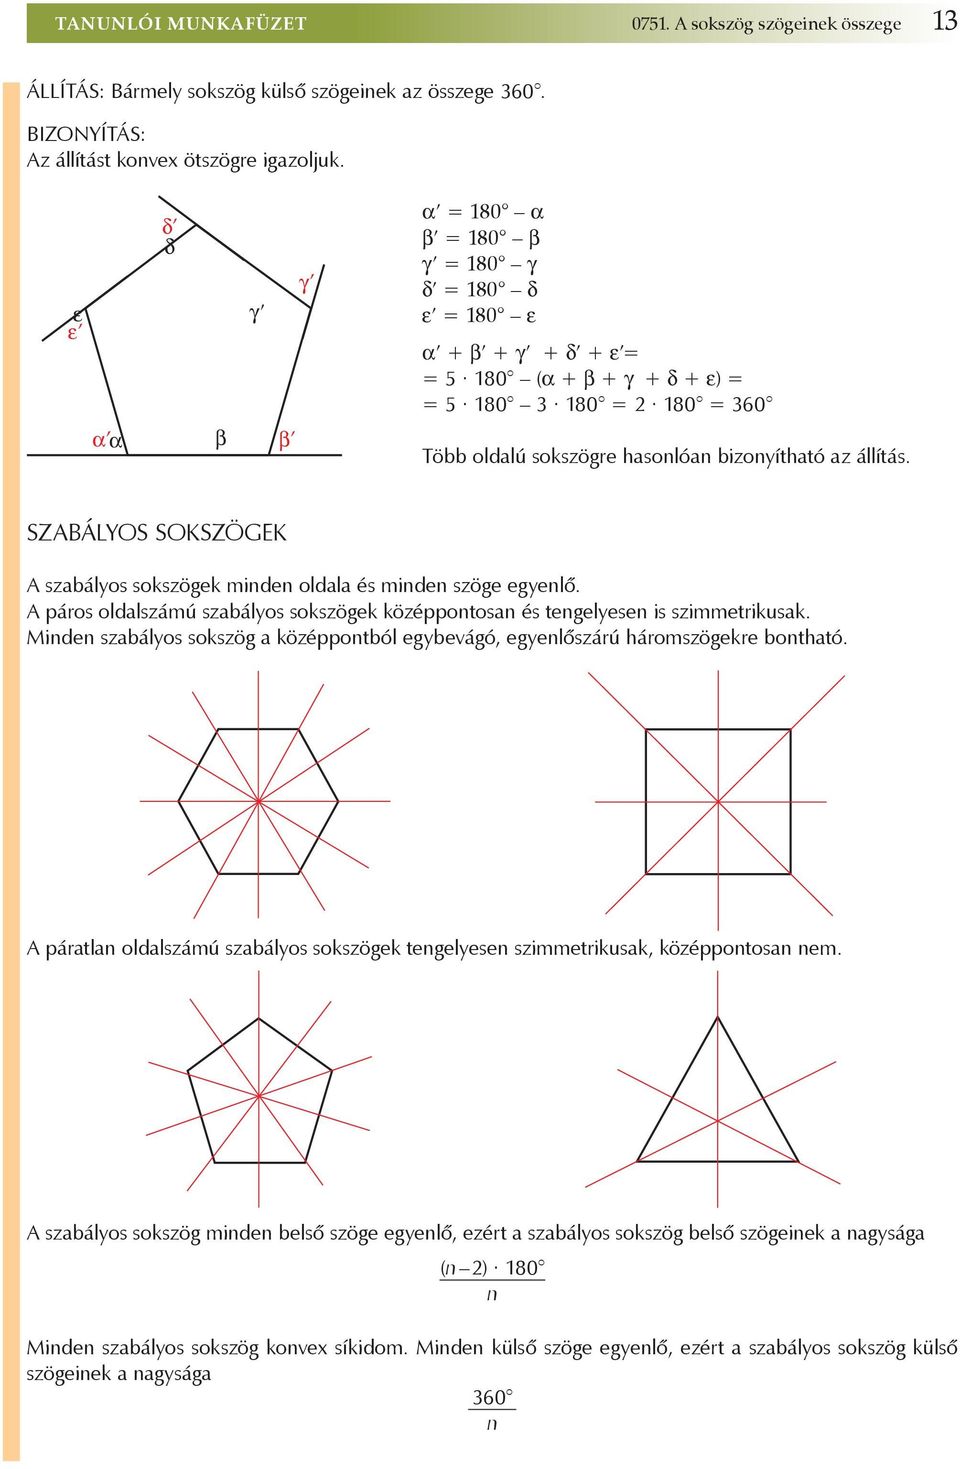 állítás. Szabályos sokszögek A szabályos sokszögek minden oldala és minden szöge egyenlő. A páros oldalszámú szabályos sokszögek középpontosan és tengelyesen is szimmetrikusak.